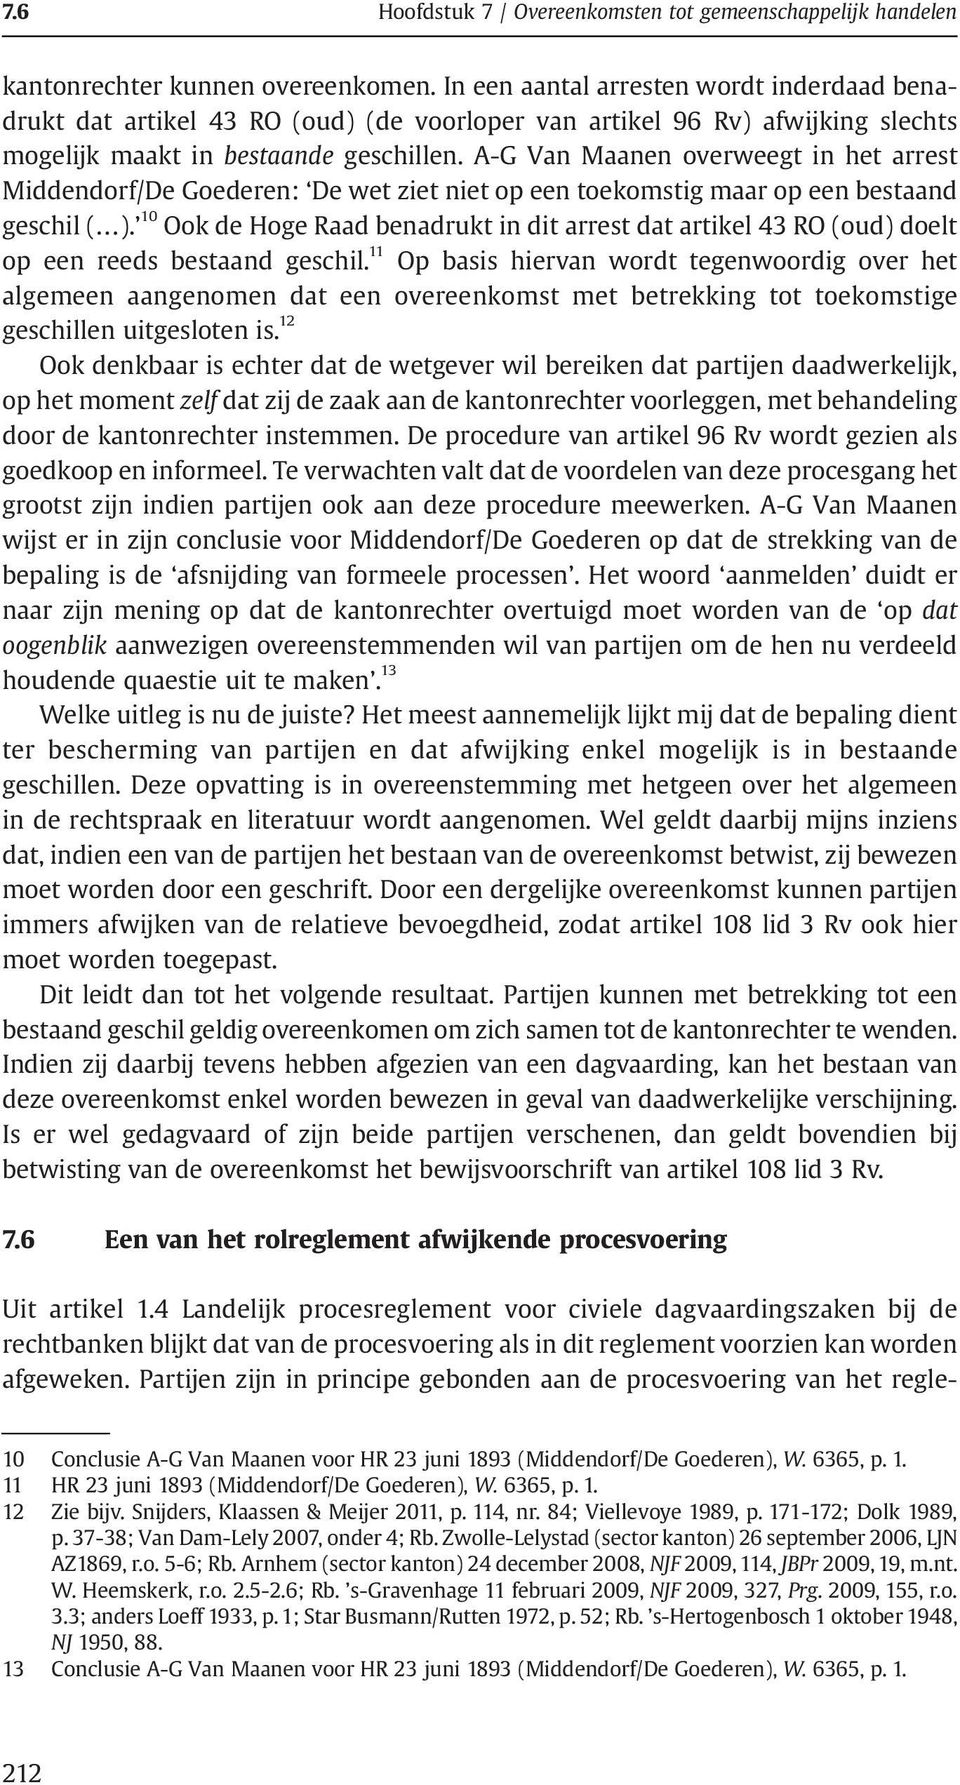 A-G Van Maanen overweegt in het arrest Middendorf/De Goederen: De wet ziet niet op een toekomstig maar op een bestaand geschil ( ).